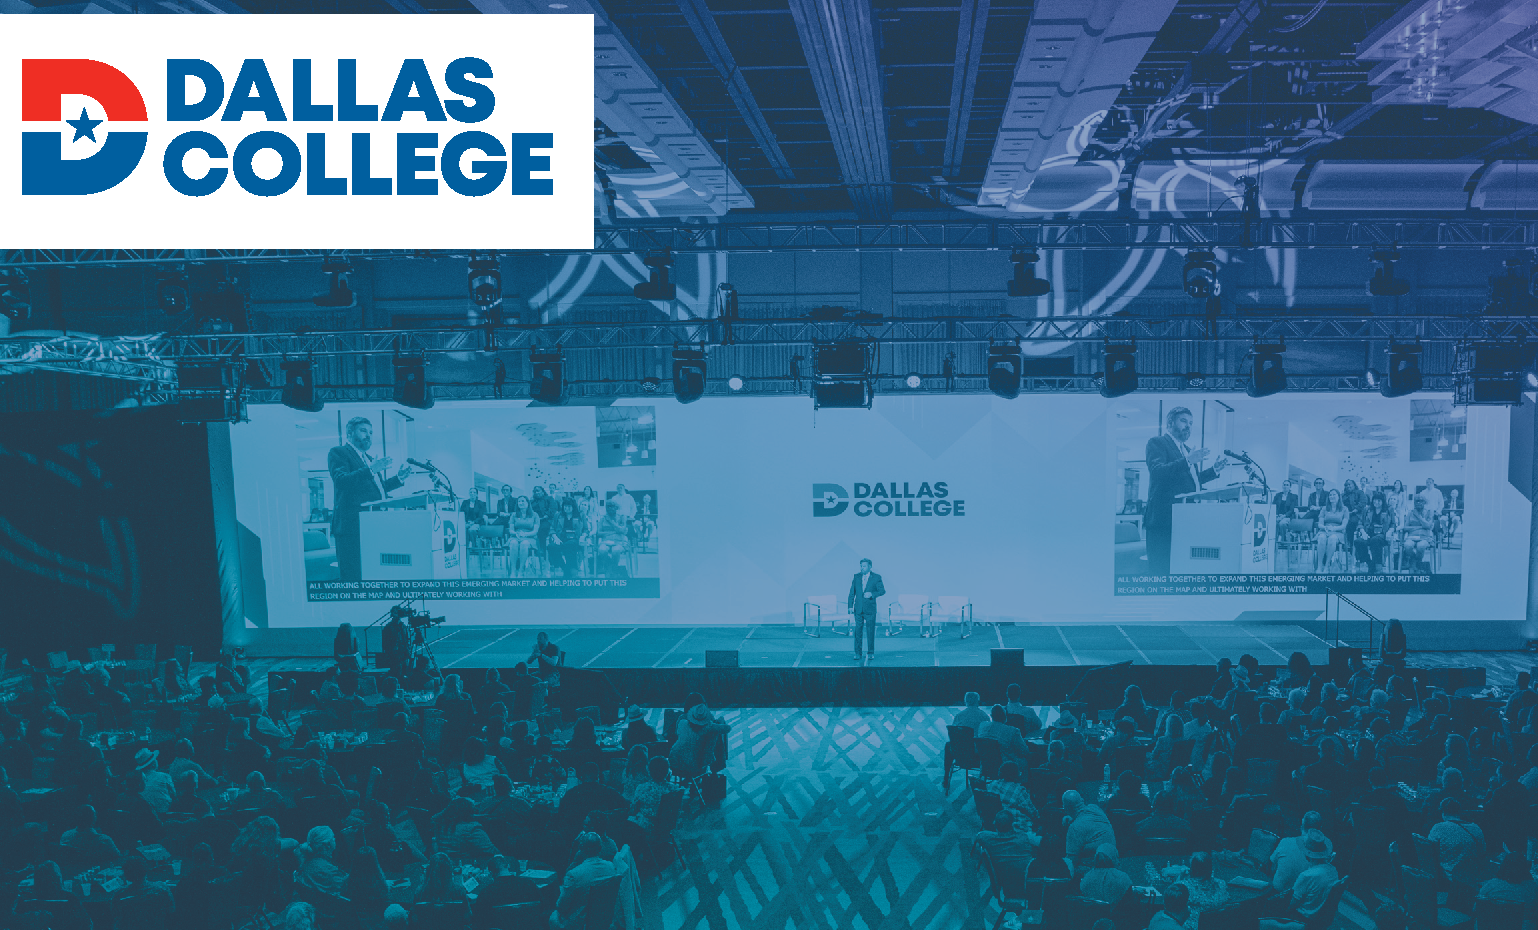 Dallas College Conference Day Picture